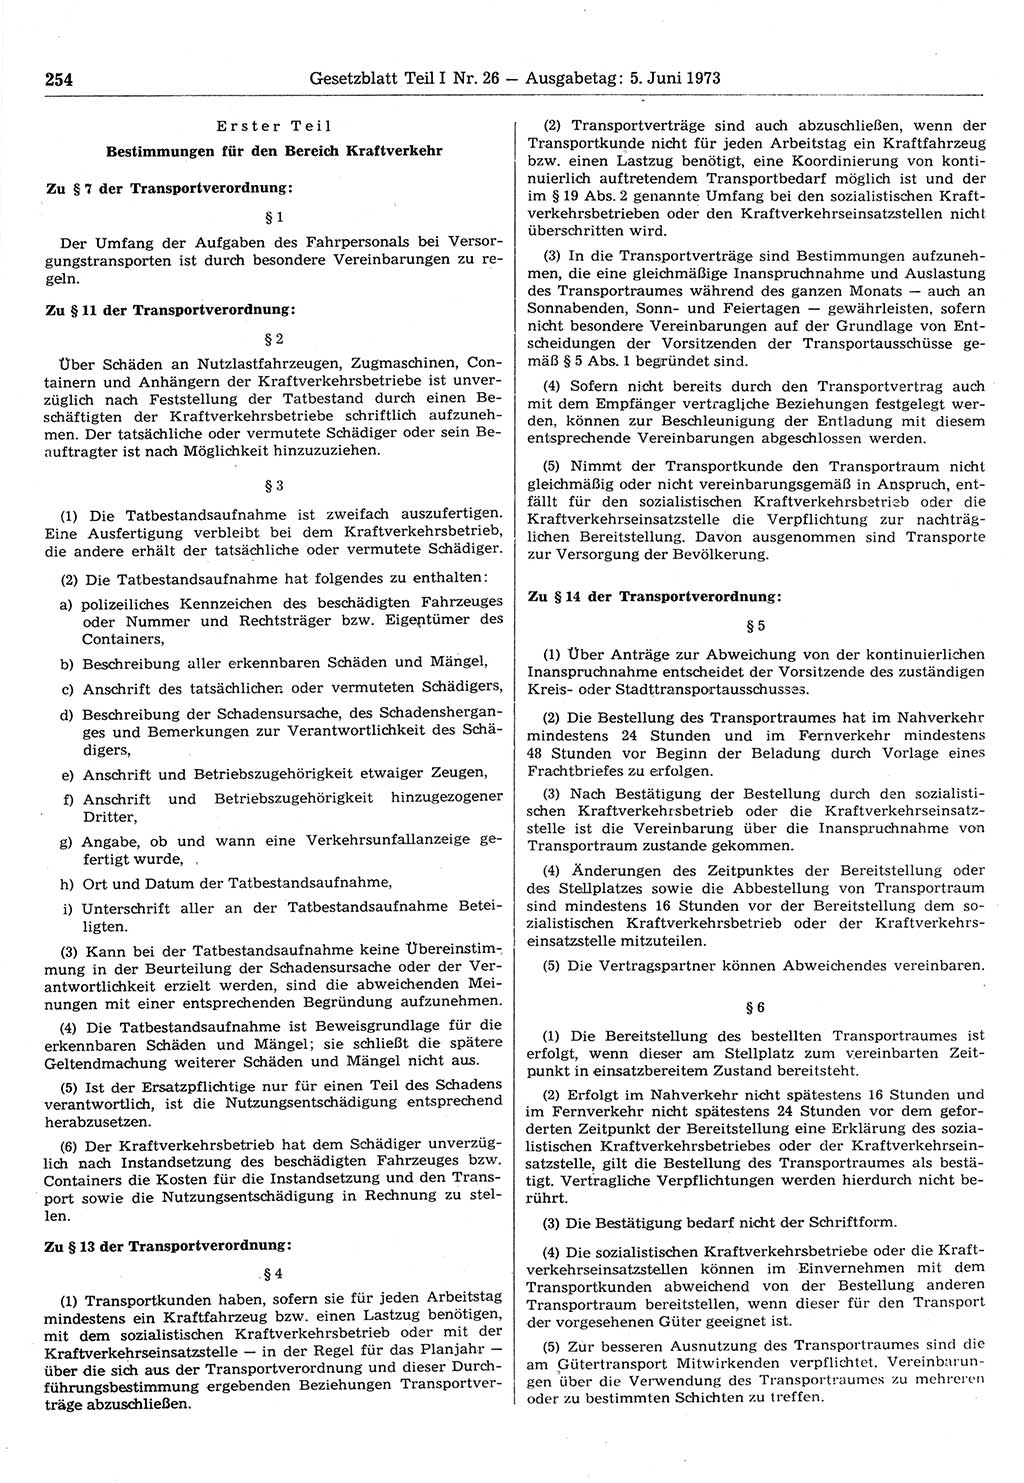 Gesetzblatt (GBl.) der Deutschen Demokratischen Republik (DDR) Teil Ⅰ 1973, Seite 254 (GBl. DDR Ⅰ 1973, S. 254)